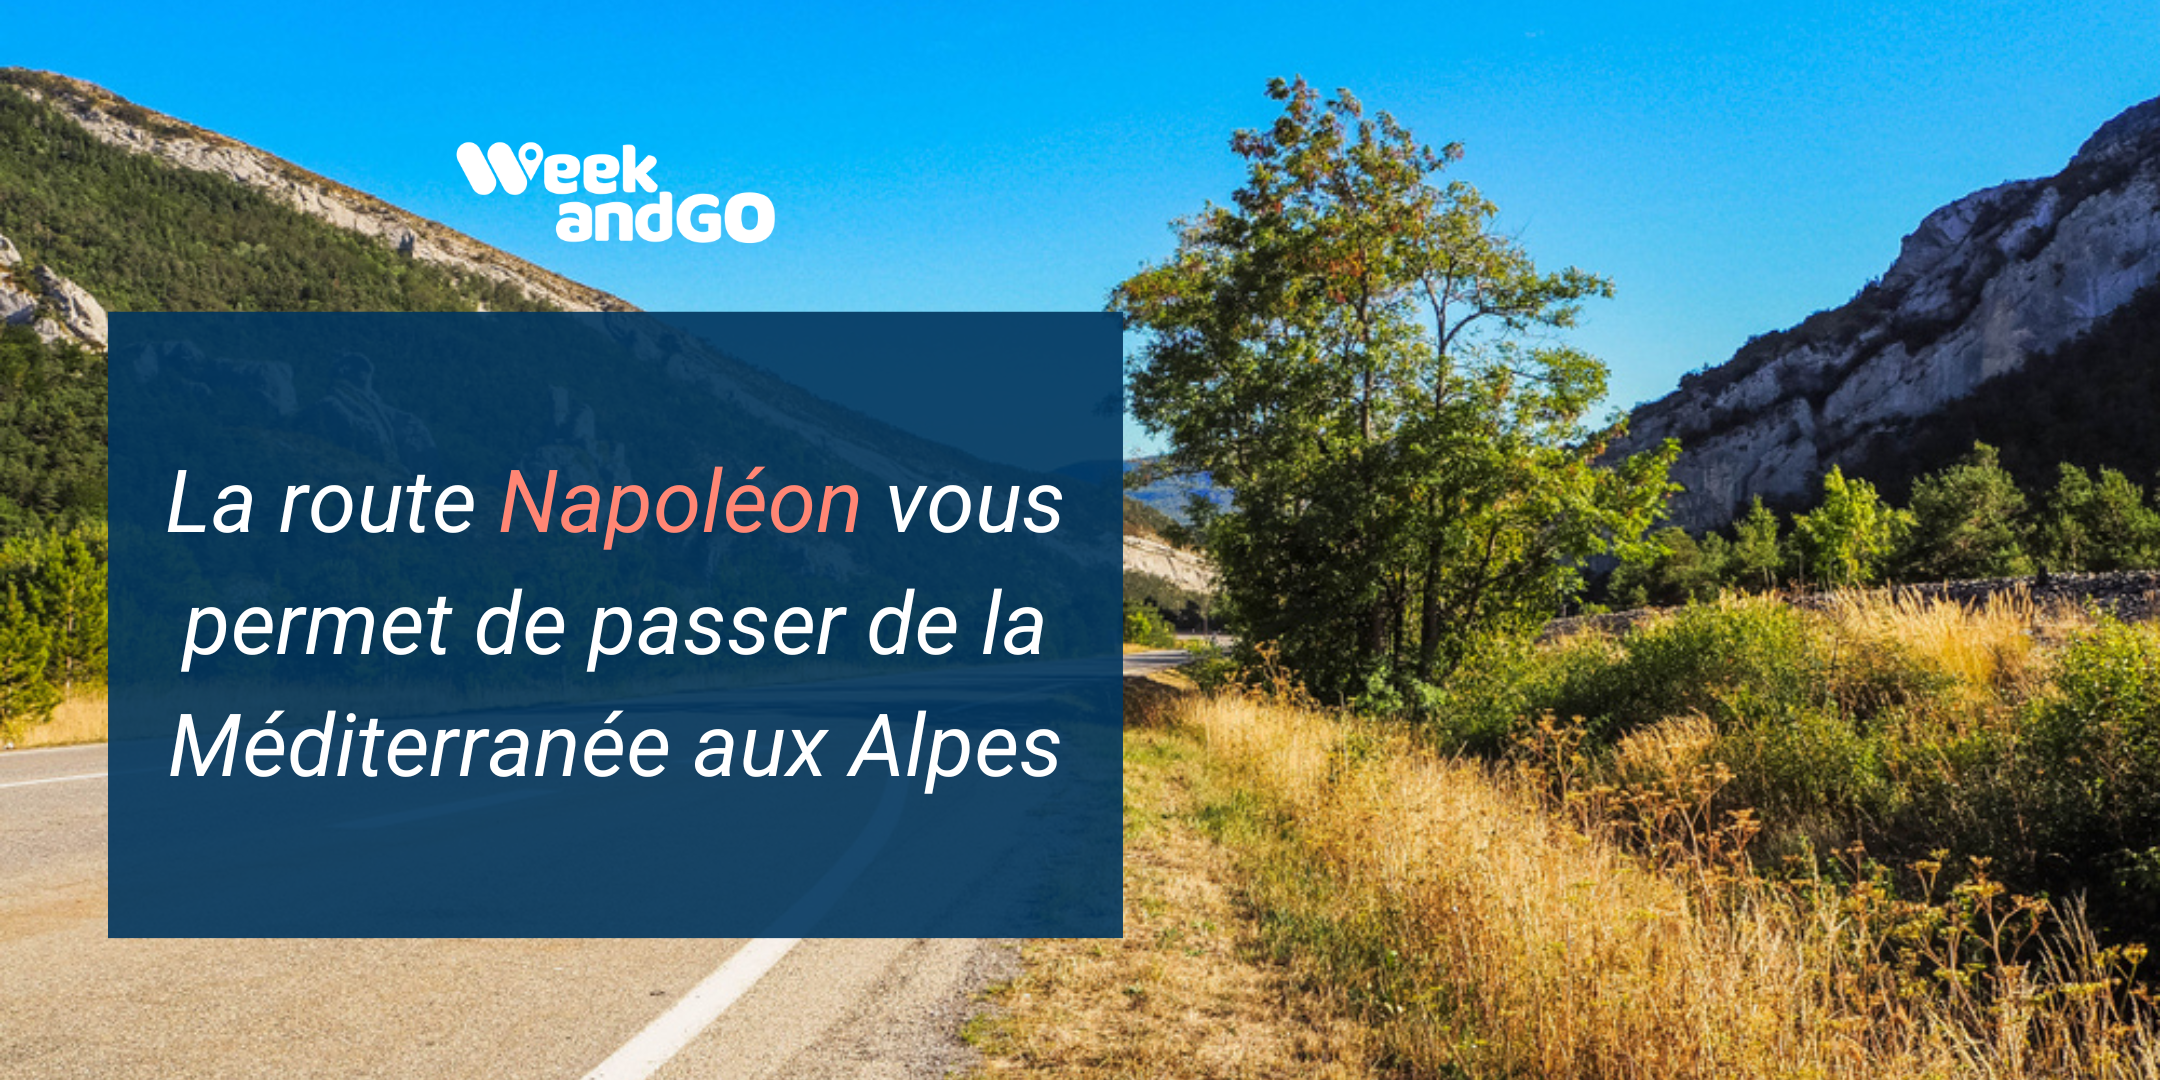 La route Napoléon vous permet de passer de la Méditerranée aux Alpes